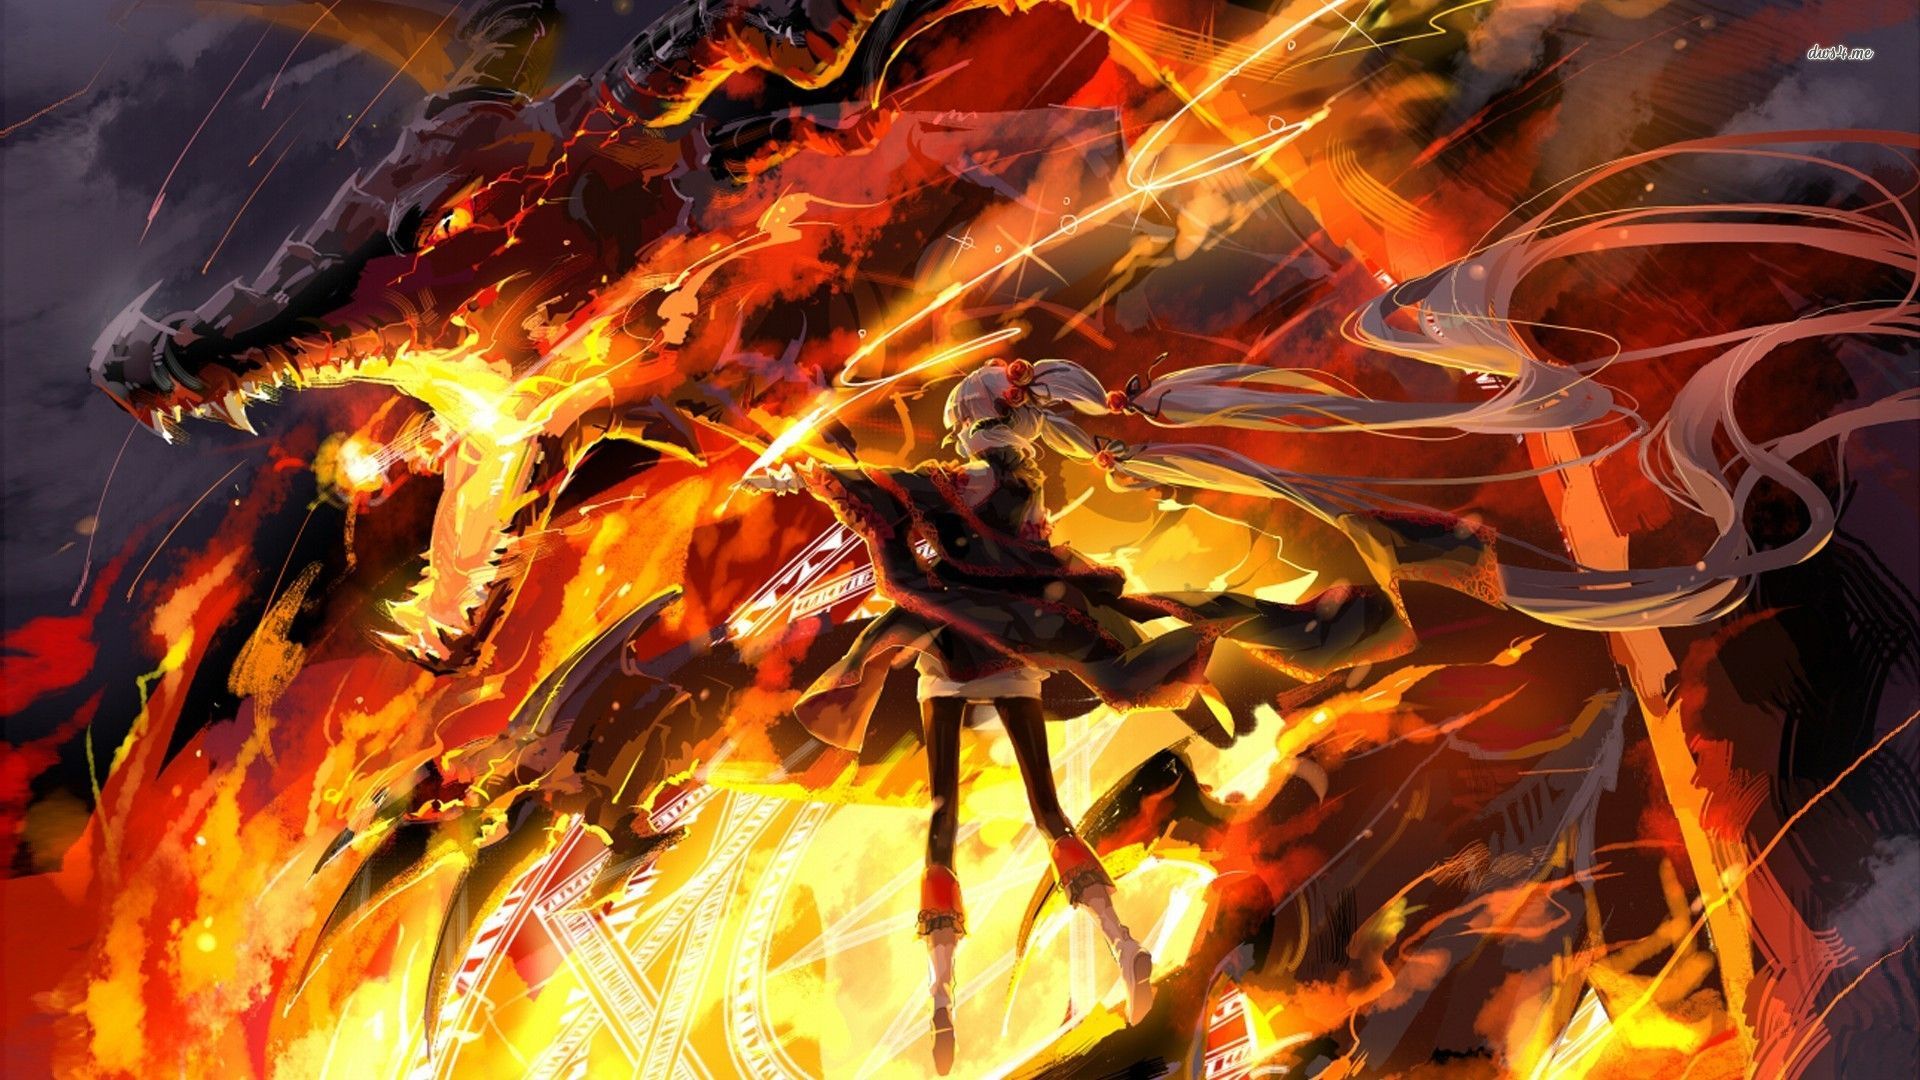 HD fire anime wallpapers | Peakpx